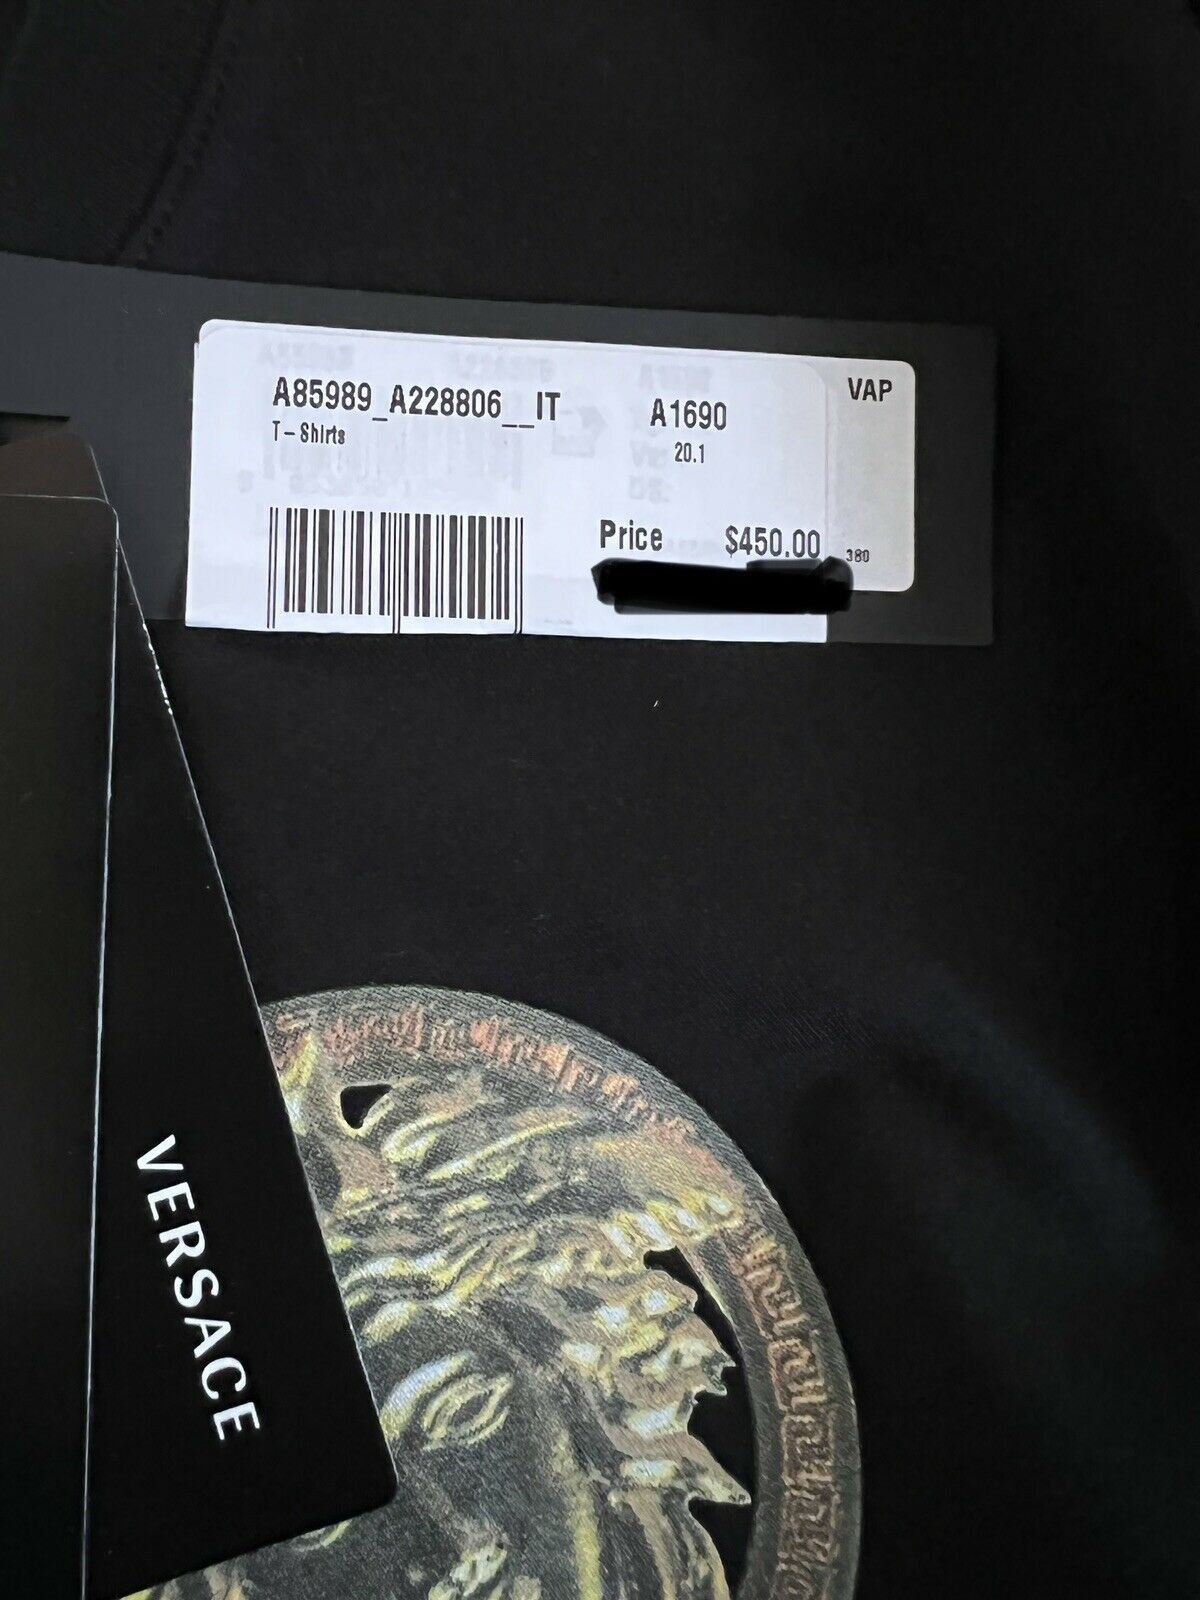 NWT 450 $ Versace Medusa Home Signature Print T-Shirt mit Rundhalsausschnitt 2XL Italien 85989